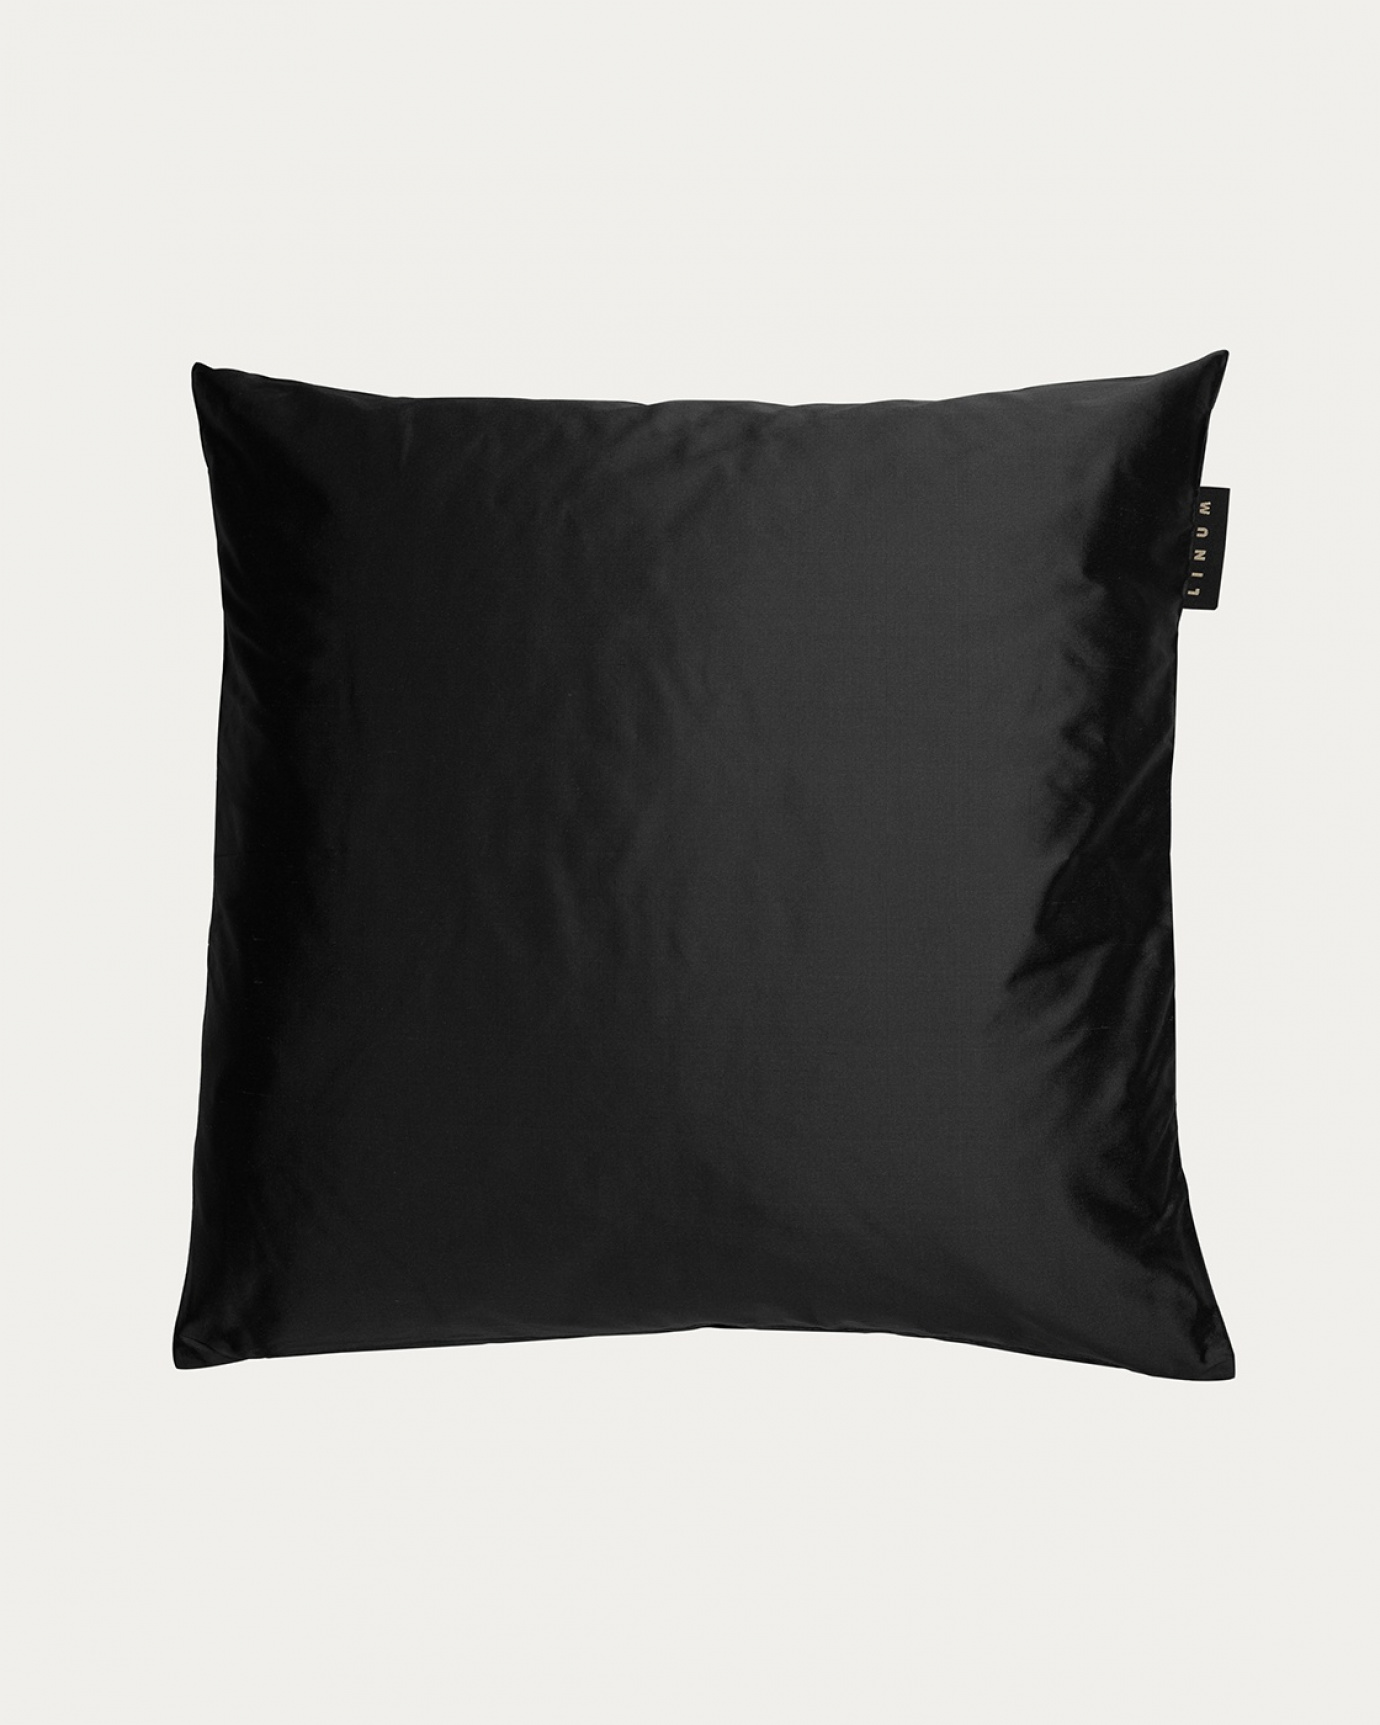 Produktbild schwarz SILK Kissenhülle aus 100% Dupionseide, die einen schönen Glanz verleiht von LINUM DESIGN. Größe 50x50 cm.